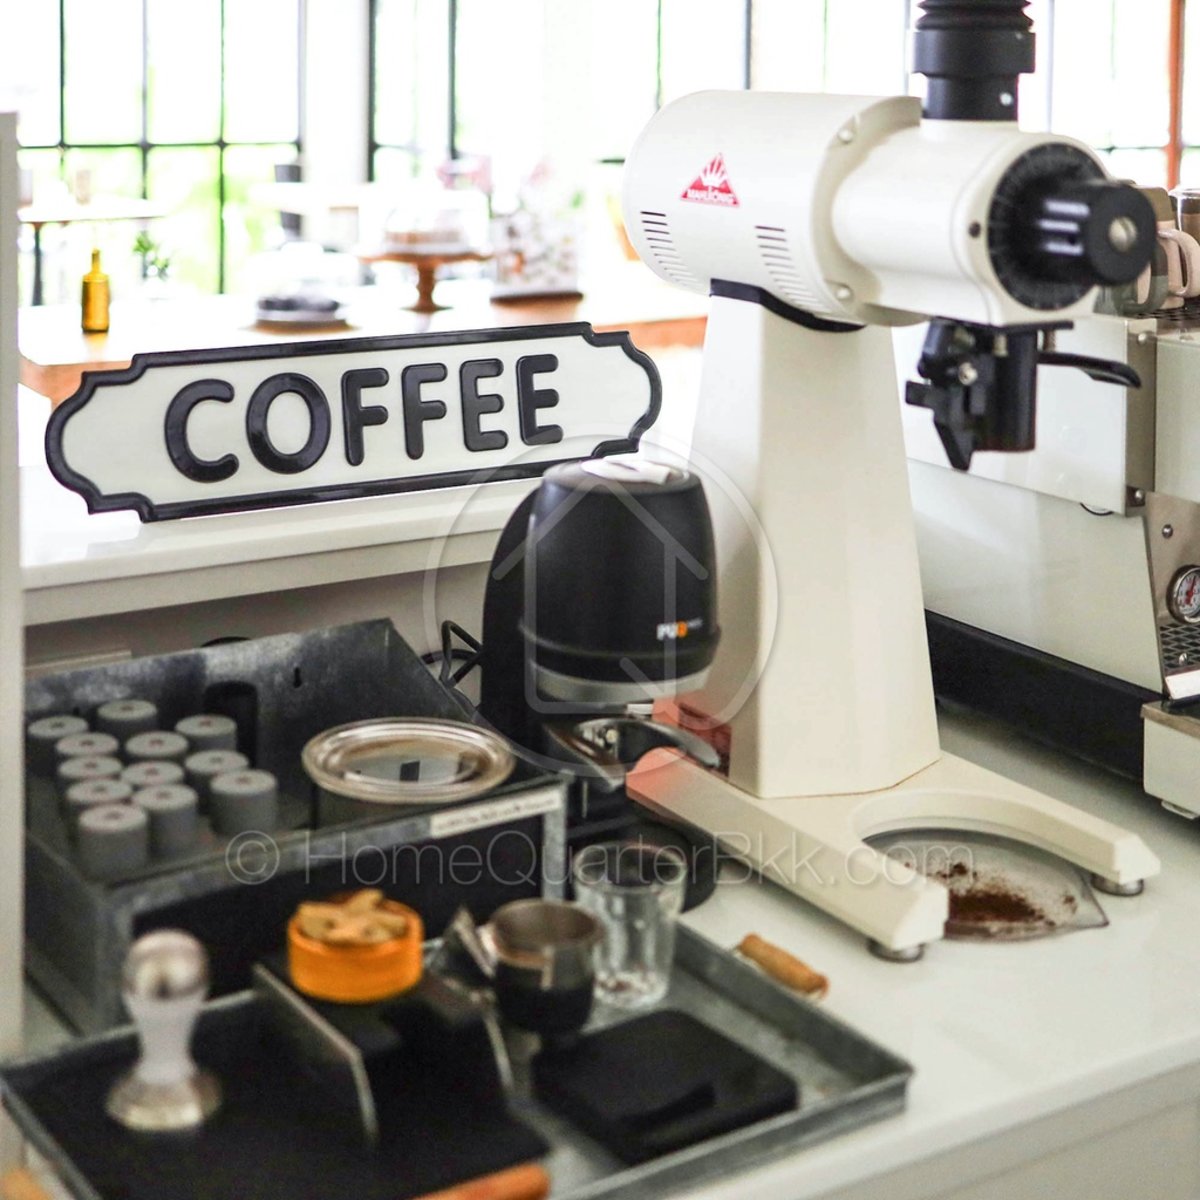 Homequarterbkk Coffee Plate Sign ป้ายแขวนตกแต่งผนัง ขนาด 13 x 54 x 0.3 cm.